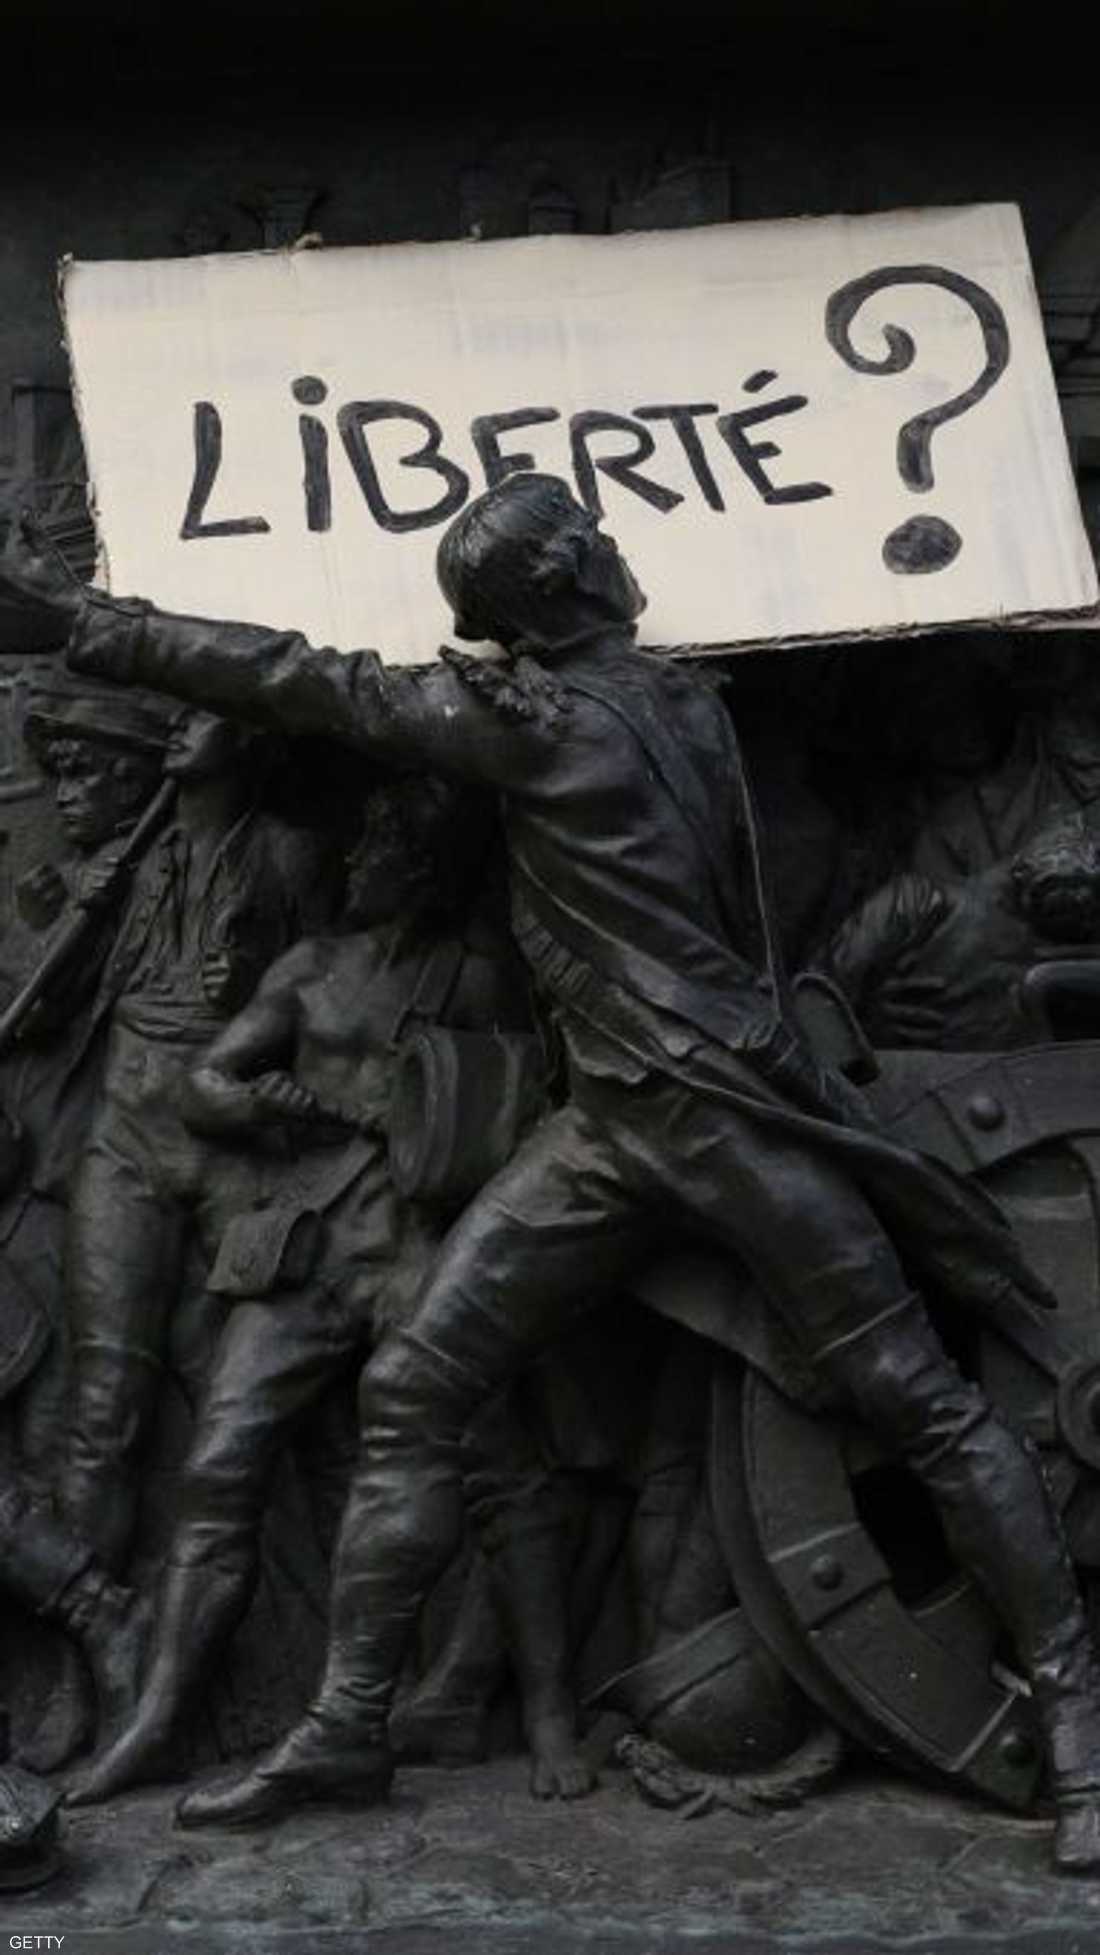 لافتة عن "الحرية" فوق تمثال أثناء الاحتجاج على القانون المثير للجدل